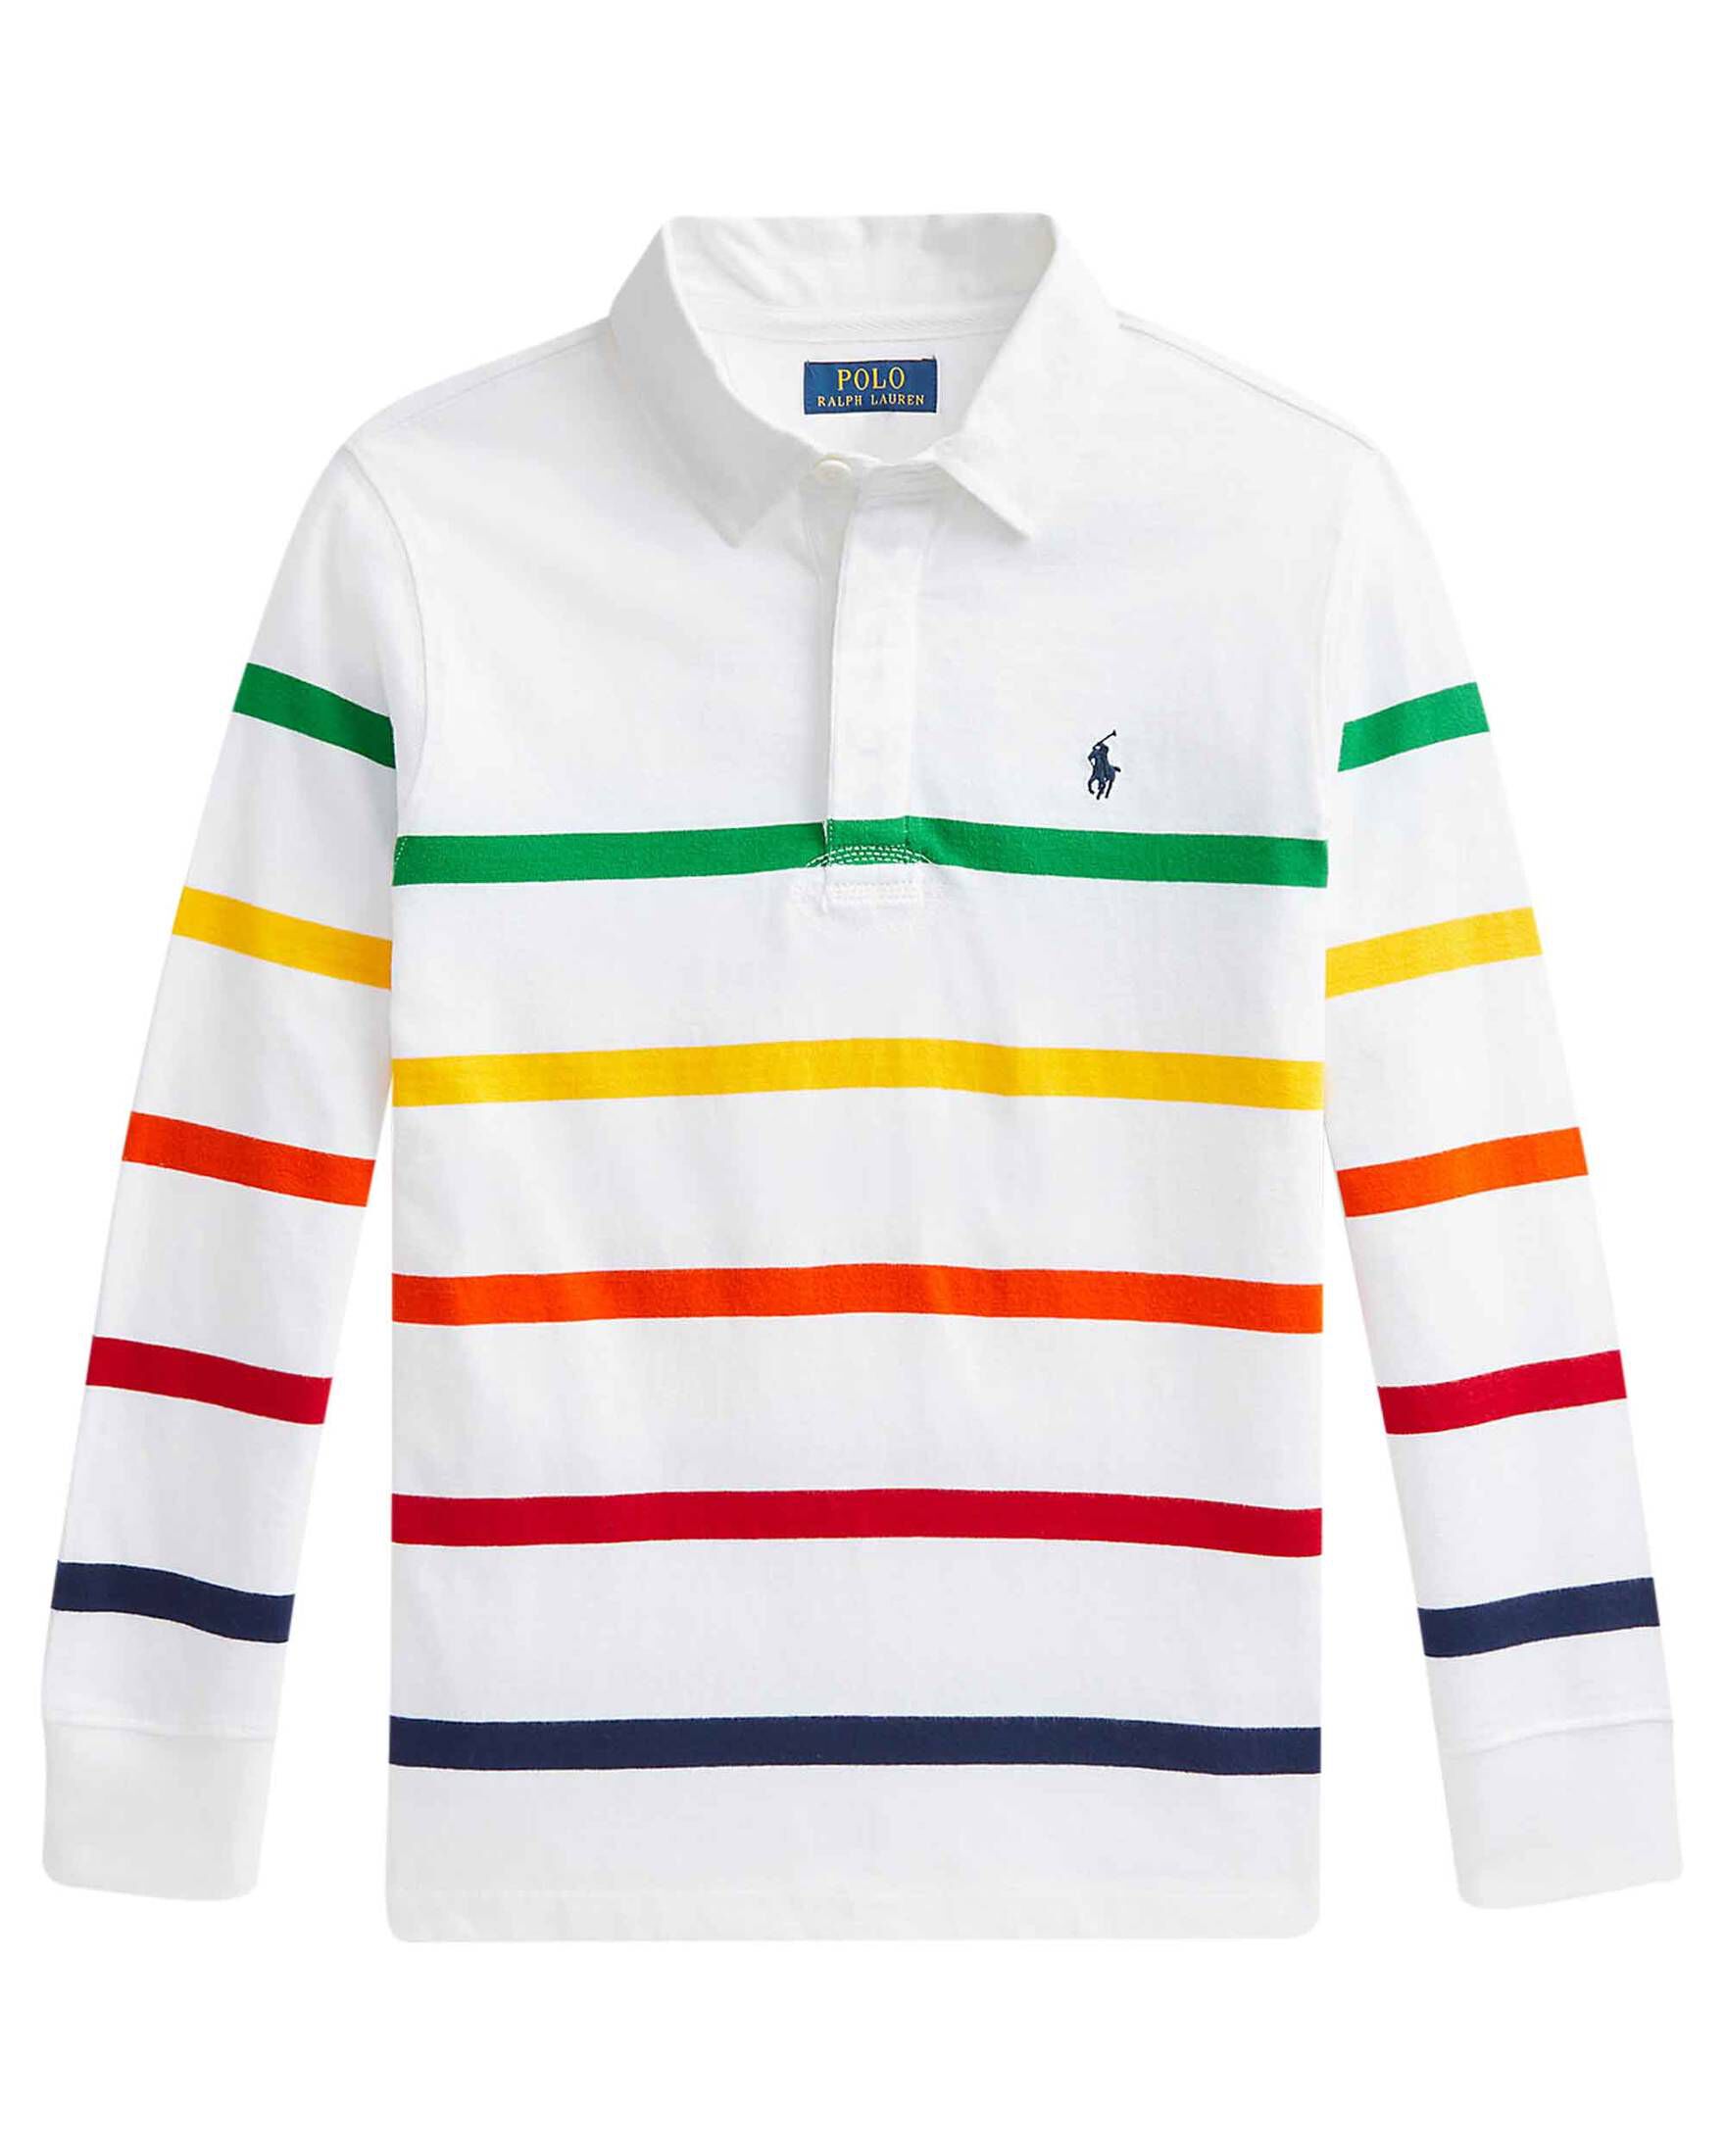 Jungen Bekleidung Shirts Poloshirts DE 128 Polo Ralph Lauren Jungen Poloshirt Gr 